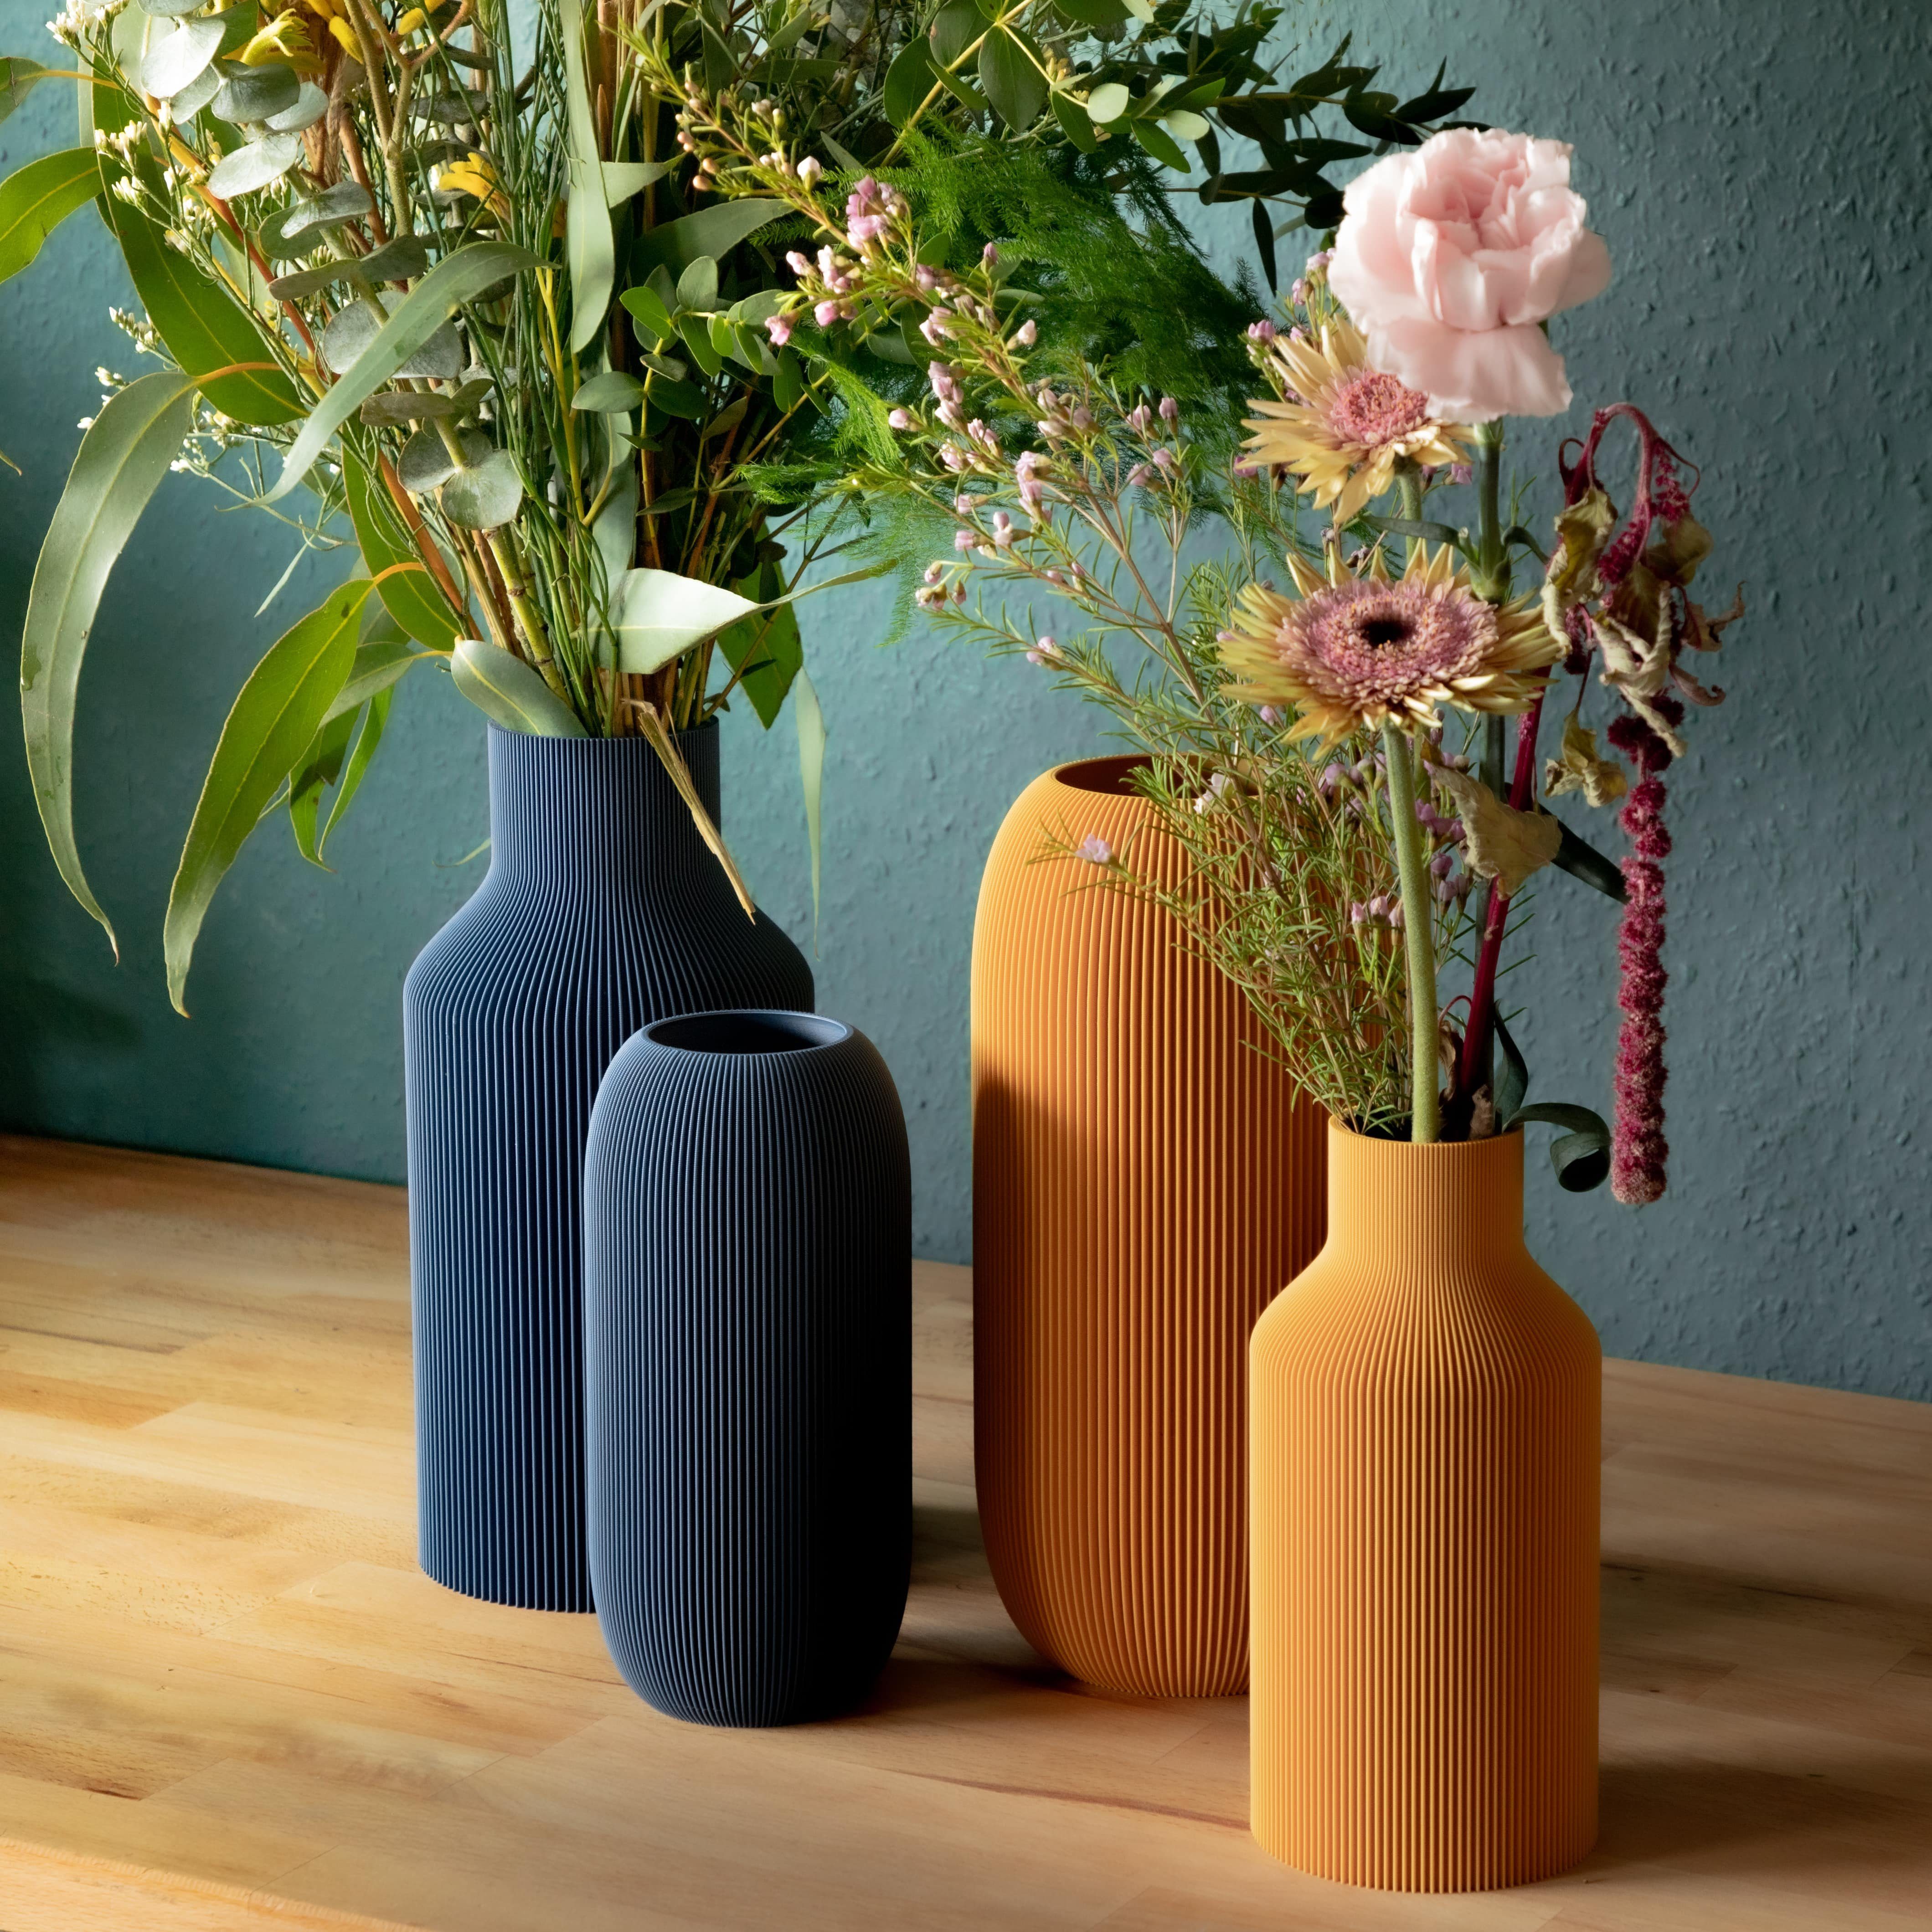 Dennismaass. Dekovase FLASCHE, 3D Drucker aller aus dem wundervolle Vase 3D Druck, dekorative Art, olivegrün Blumen Rillen-Optik, für